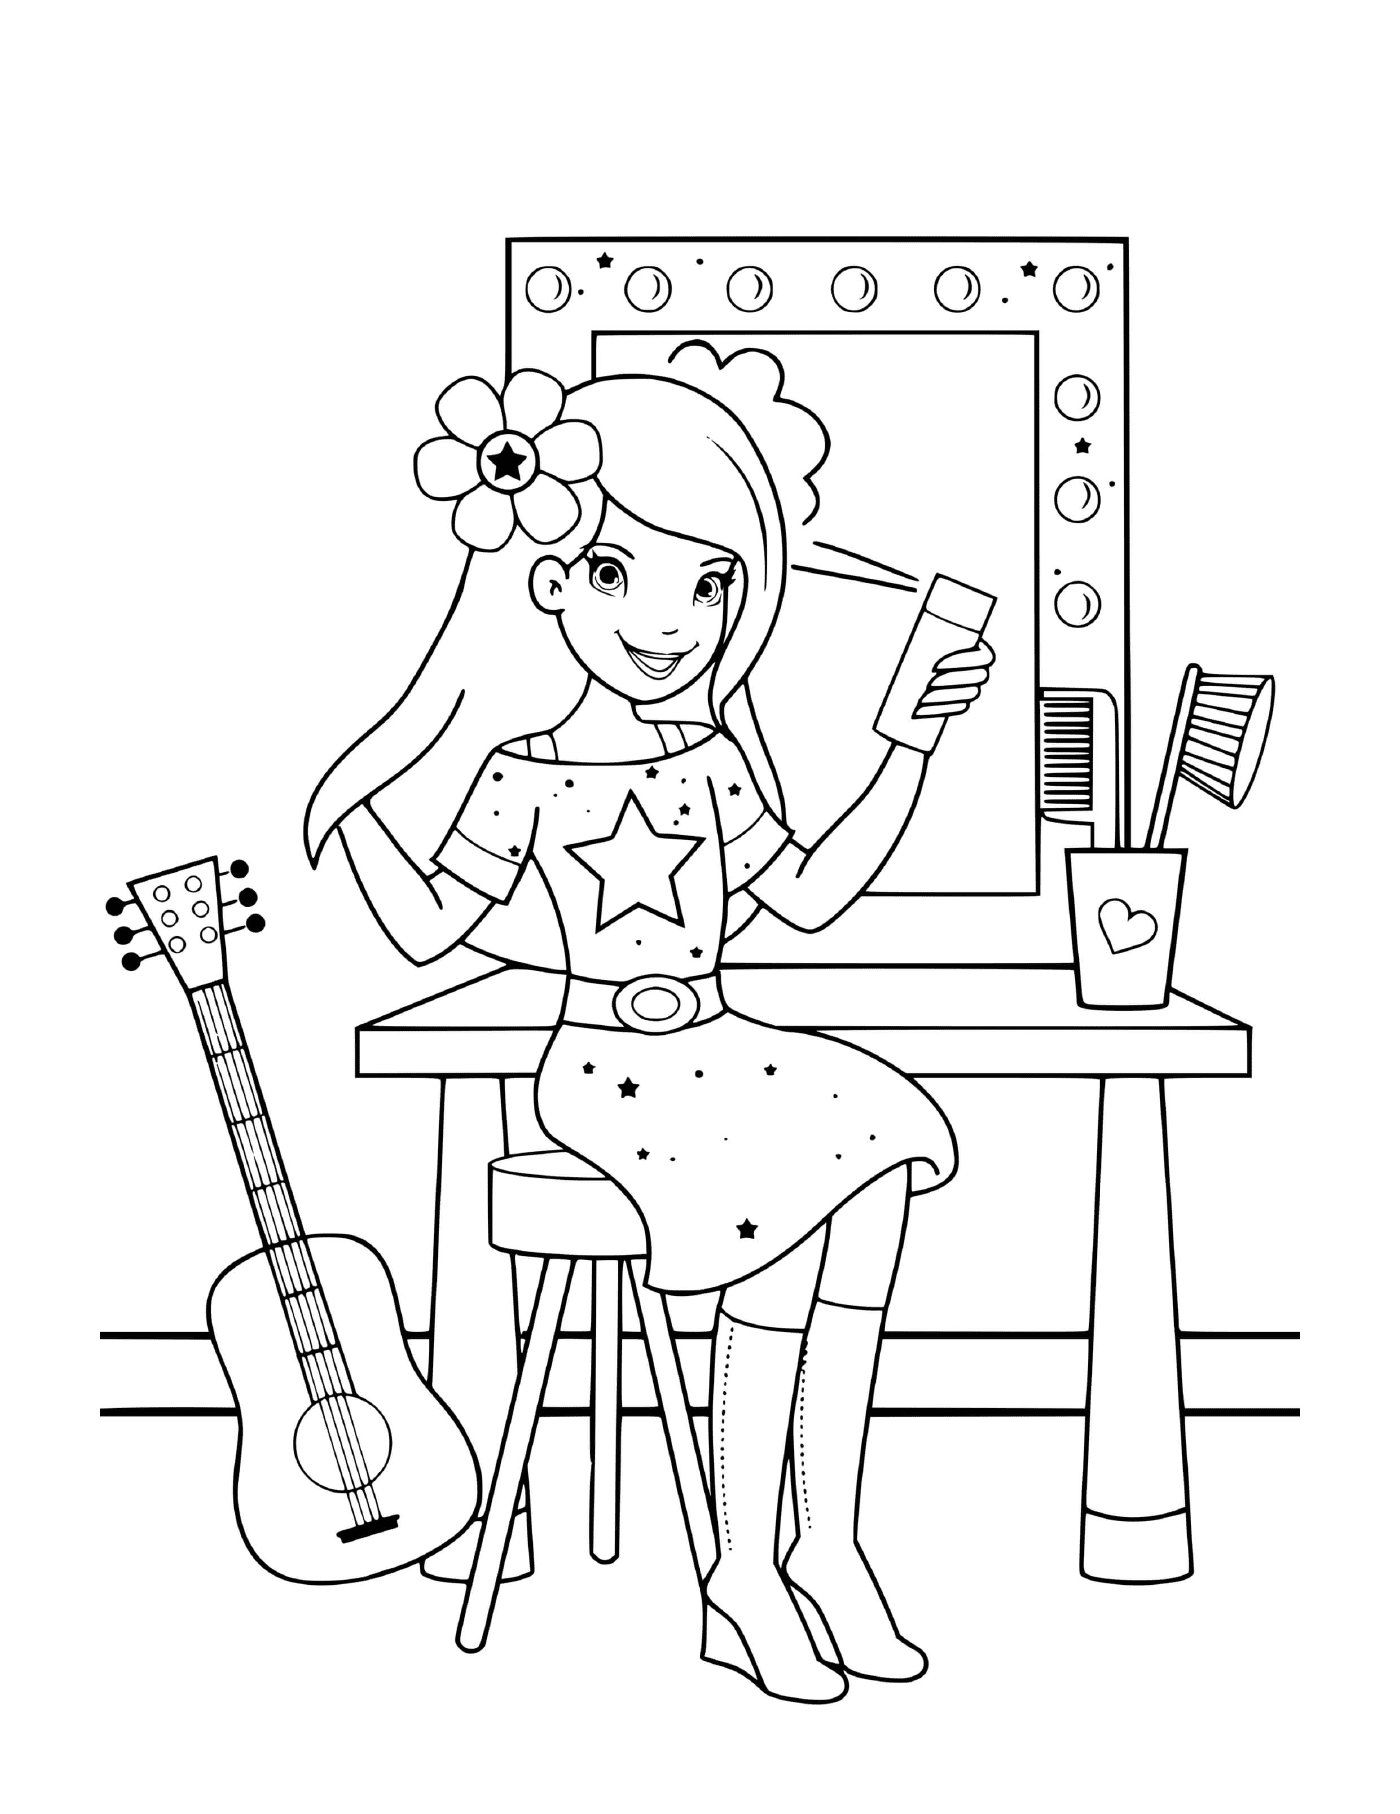  Una ragazza che si prepara per il suo show musicale con una spazzola 